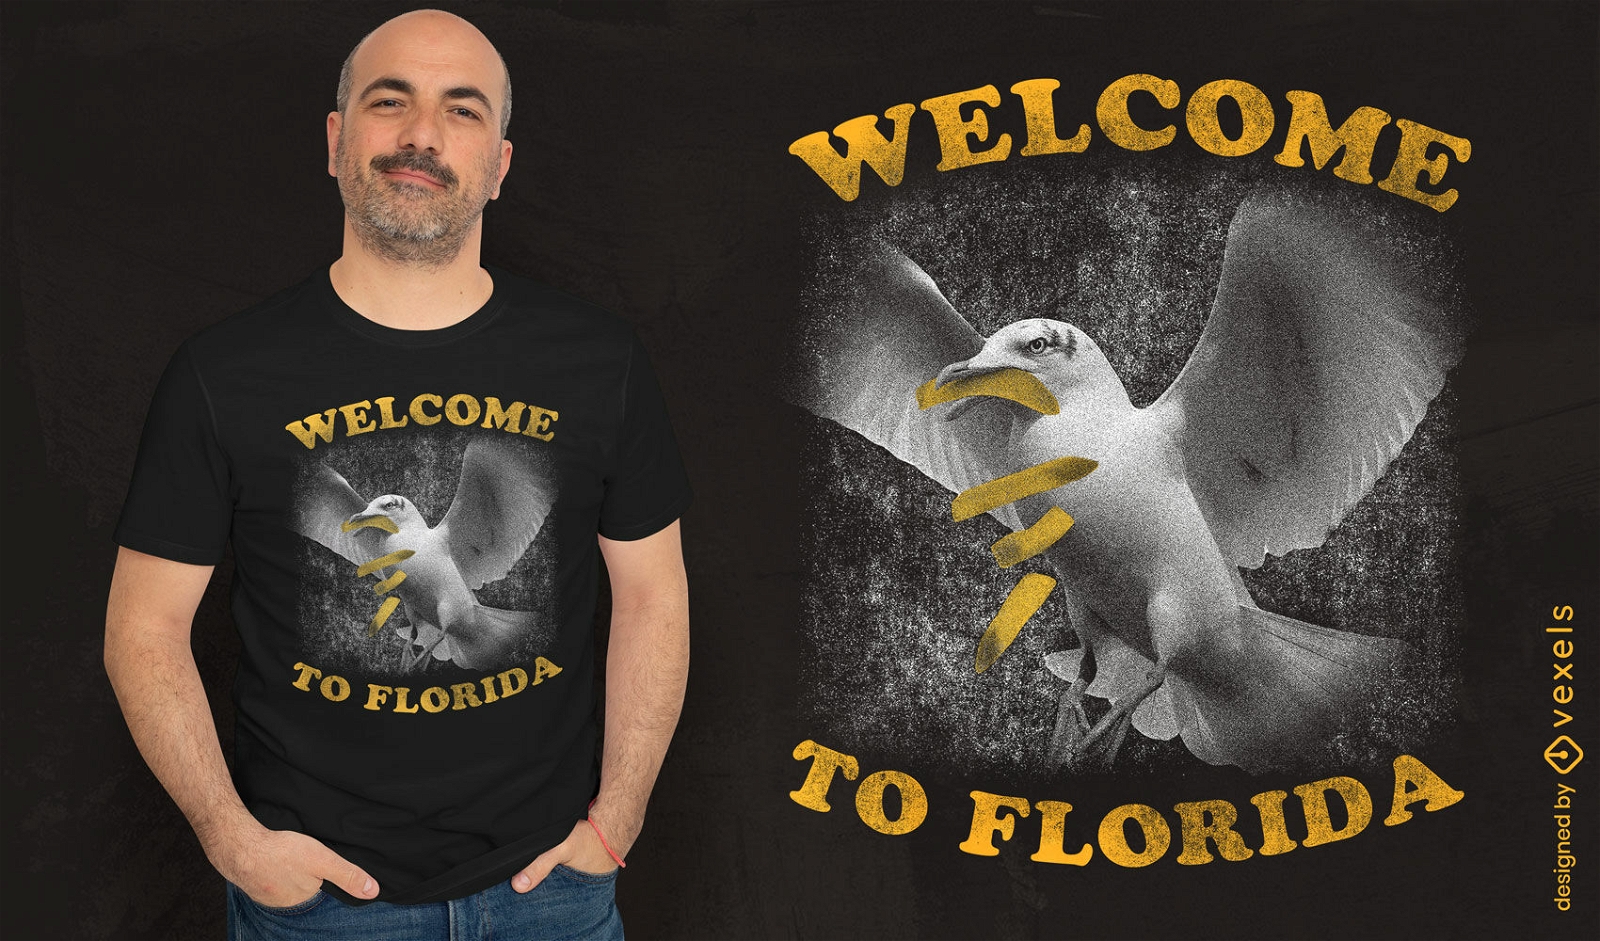 Bienvenido al dise?o de camiseta de Florida.